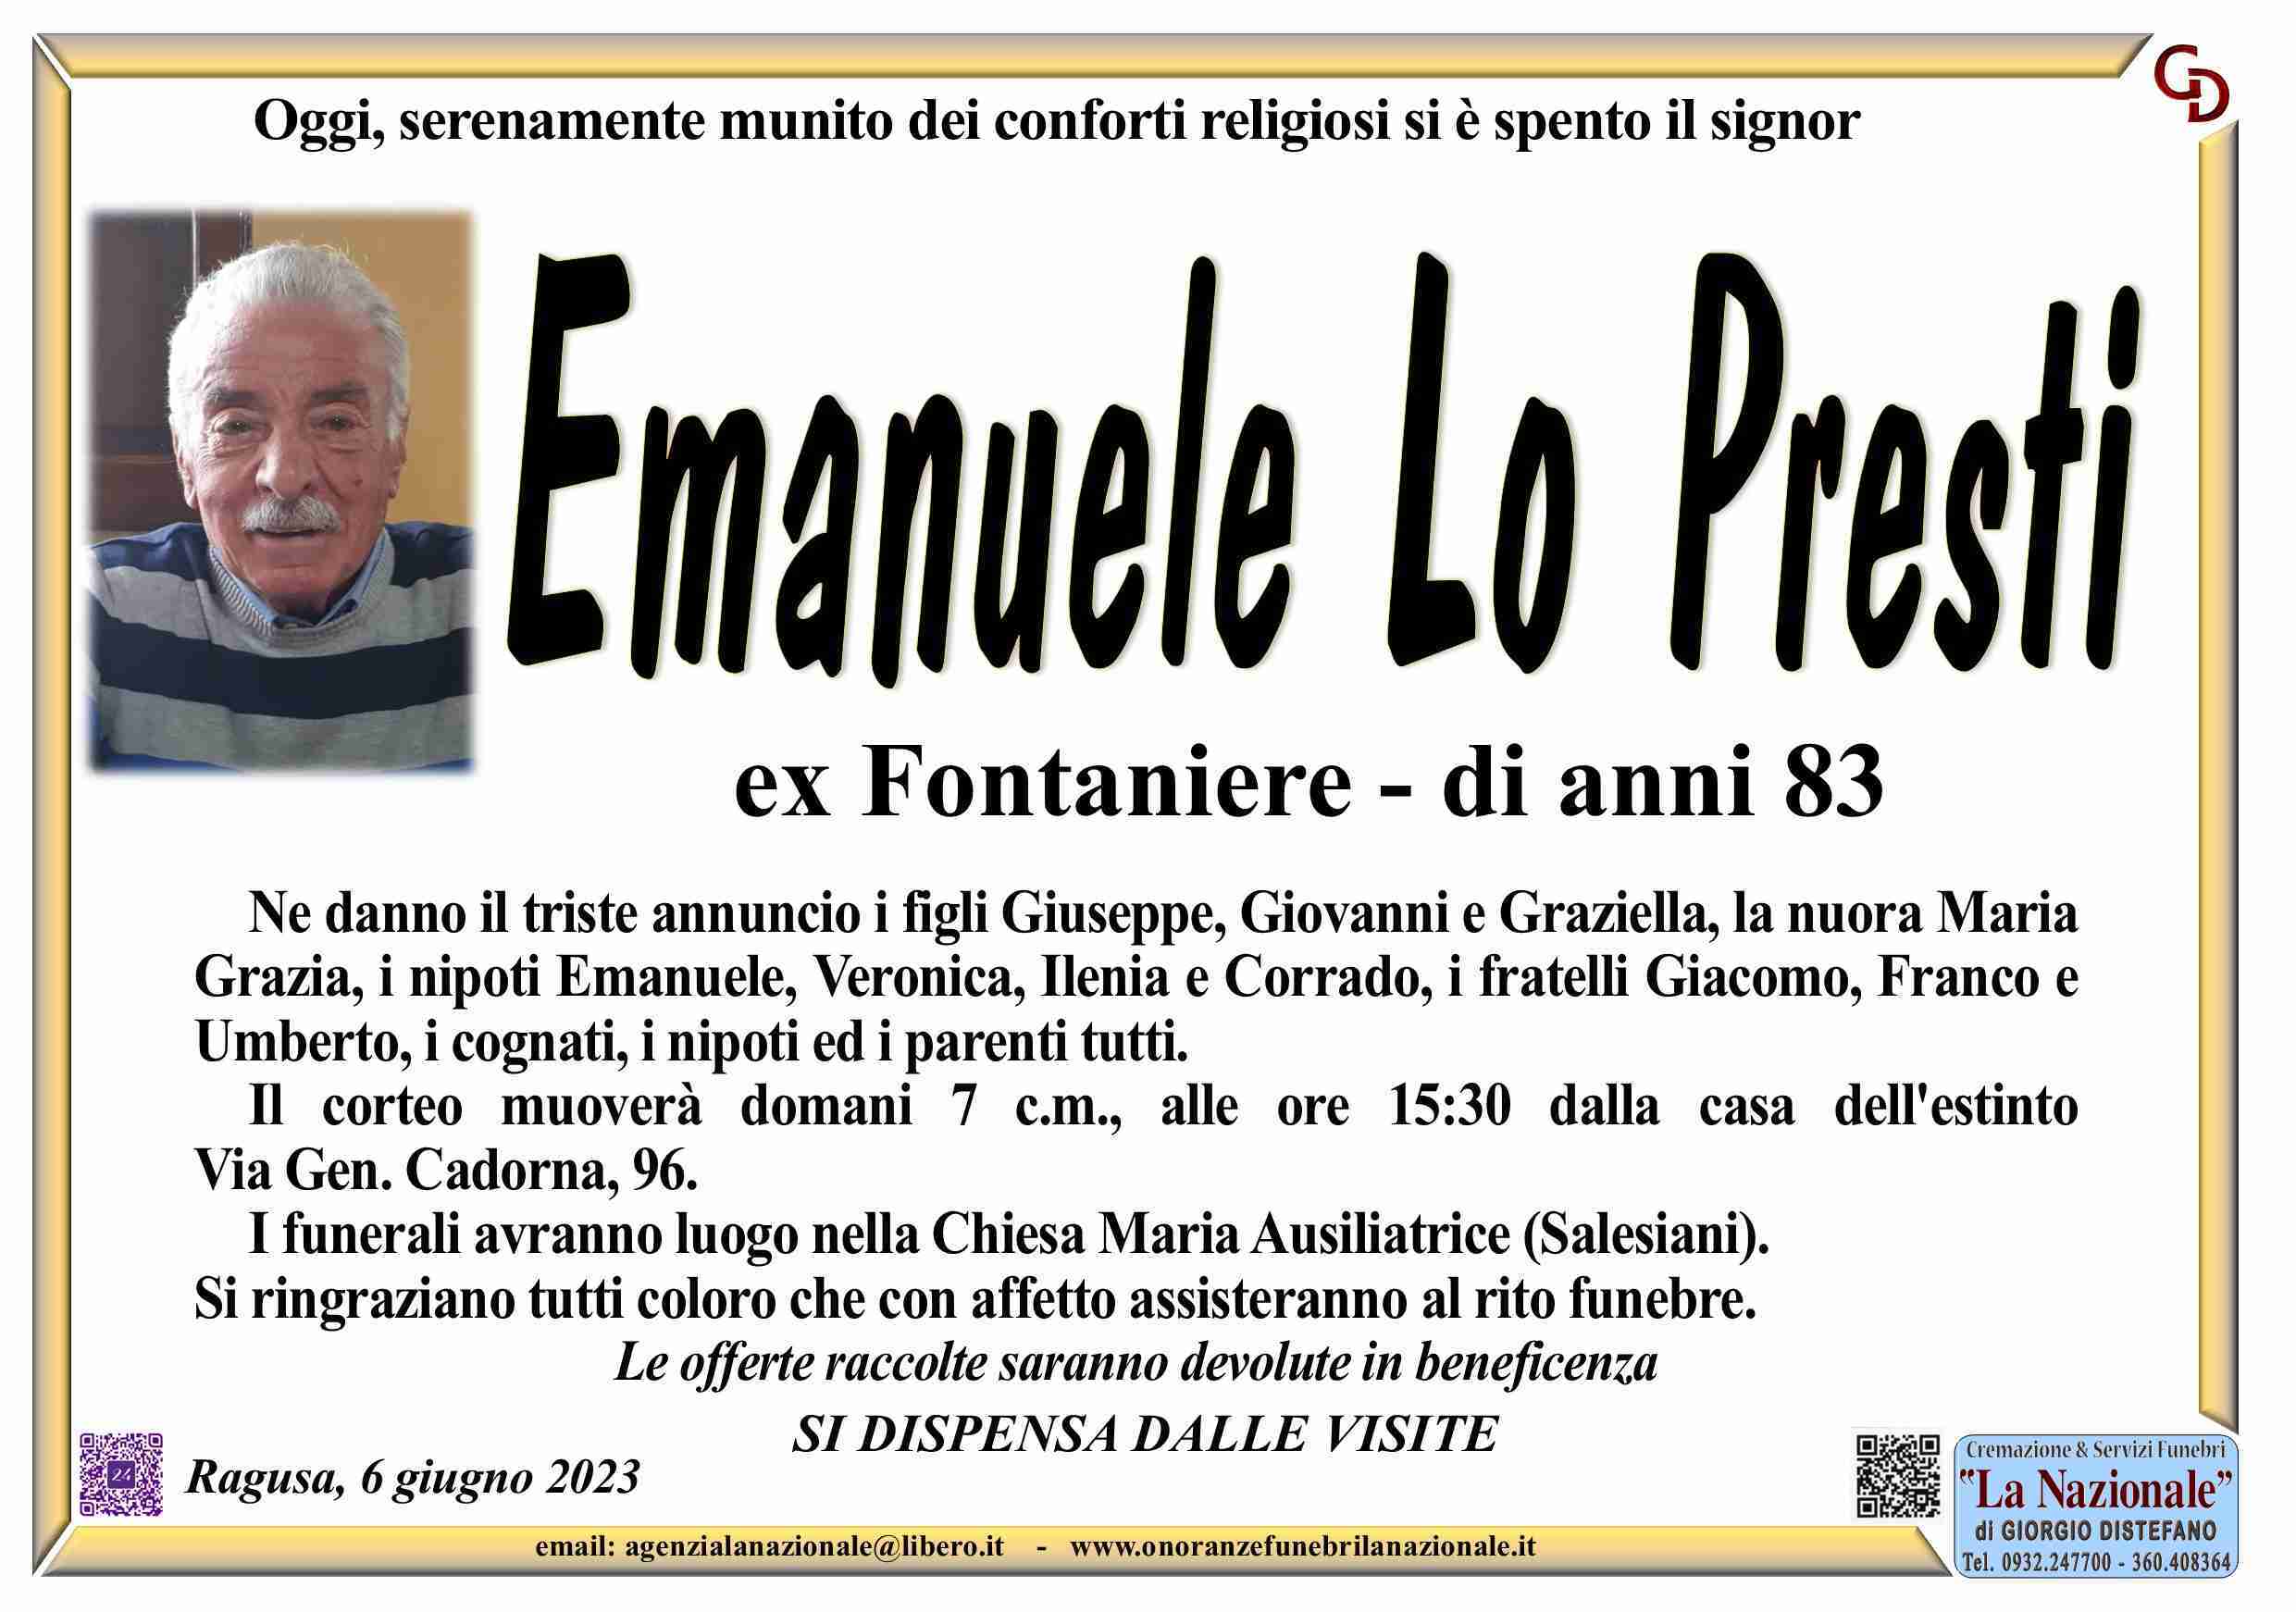 Emanuele Lo Presti